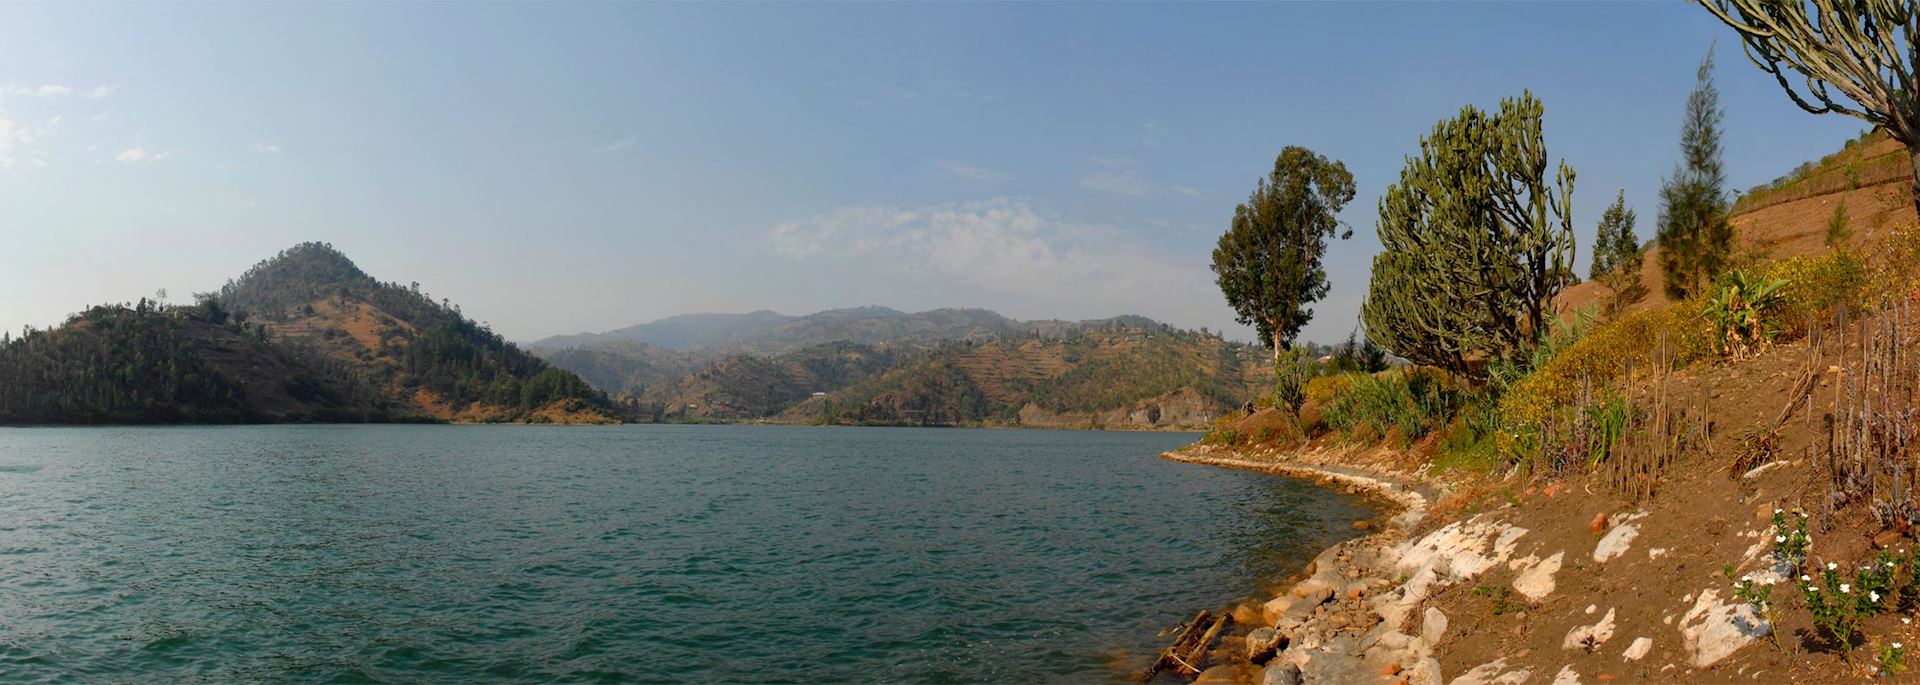 Kubuye, Lake Kivu